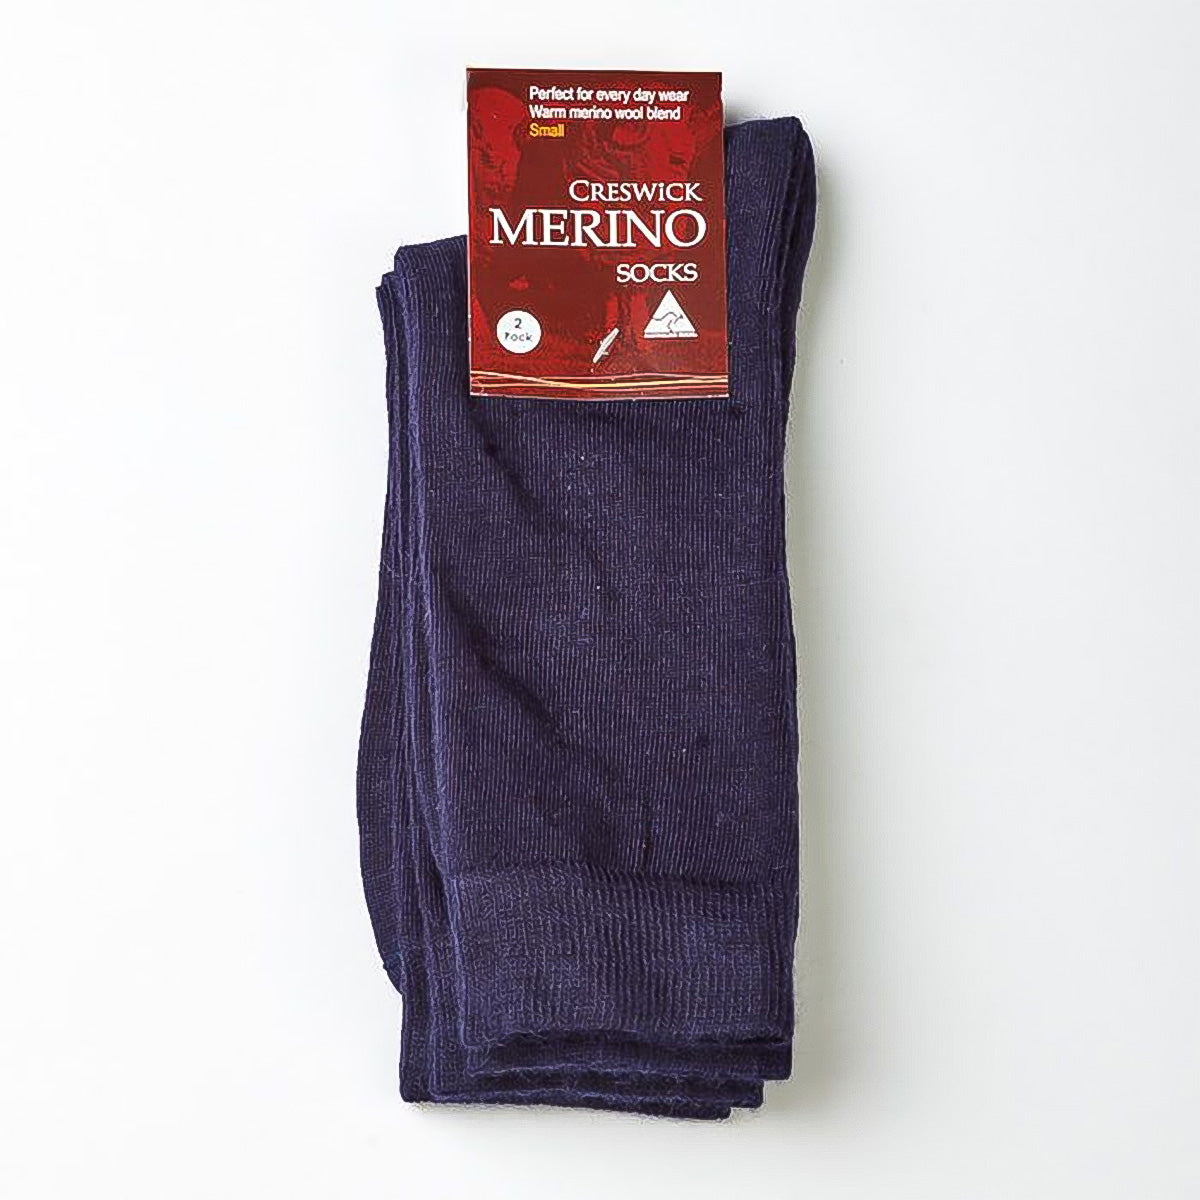 Merino Socks - 6 Pack